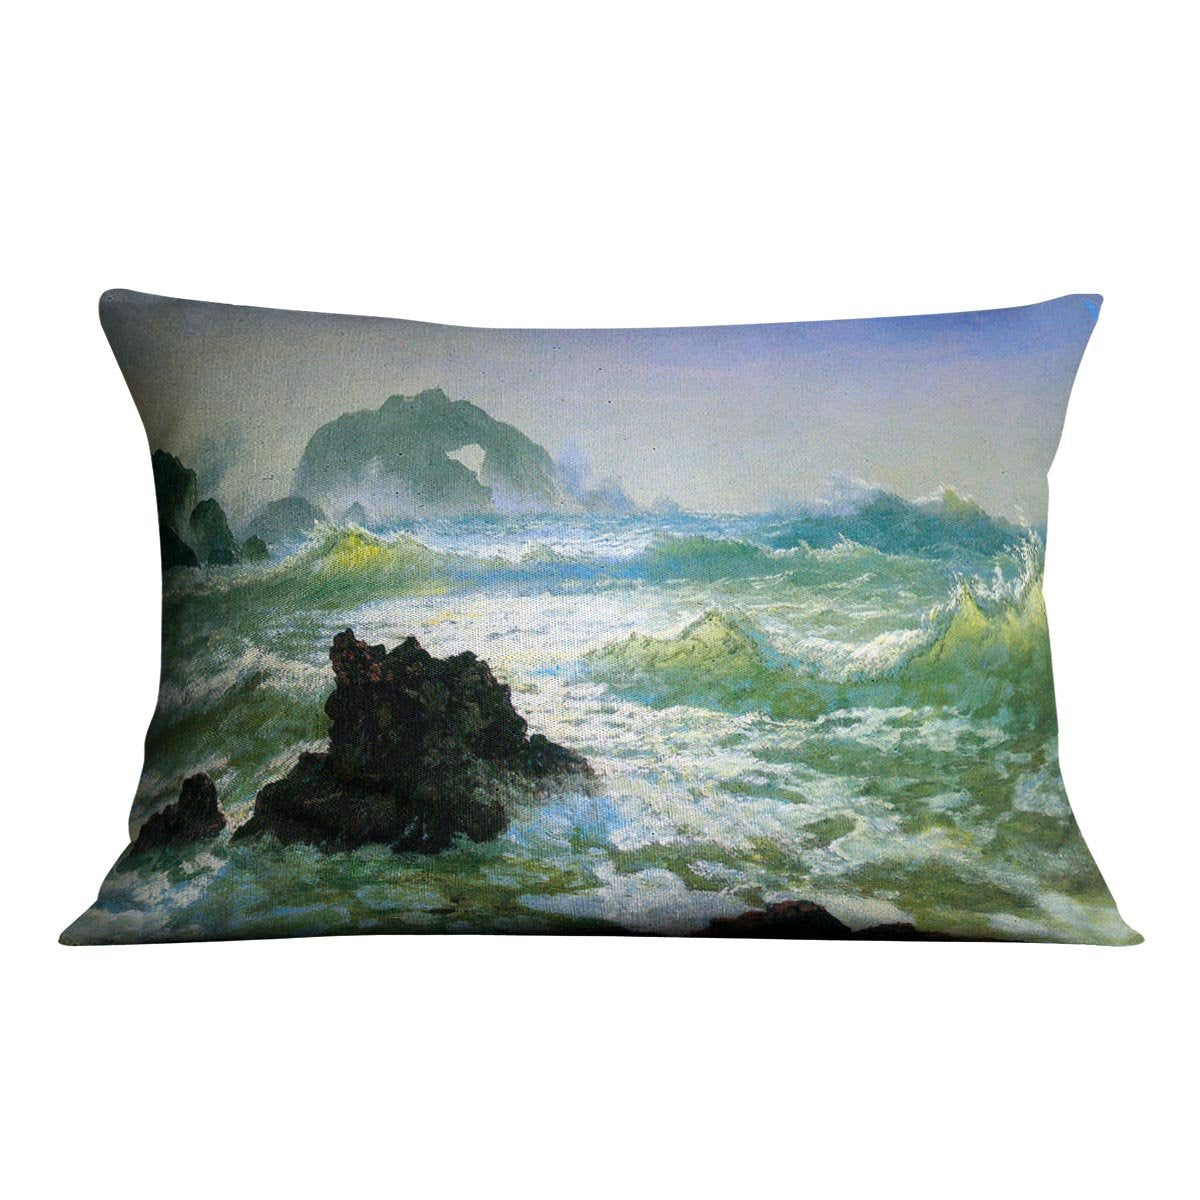 Seal Rock 2 by Bierstadt Cushion - Canvas Art Rocks - 4